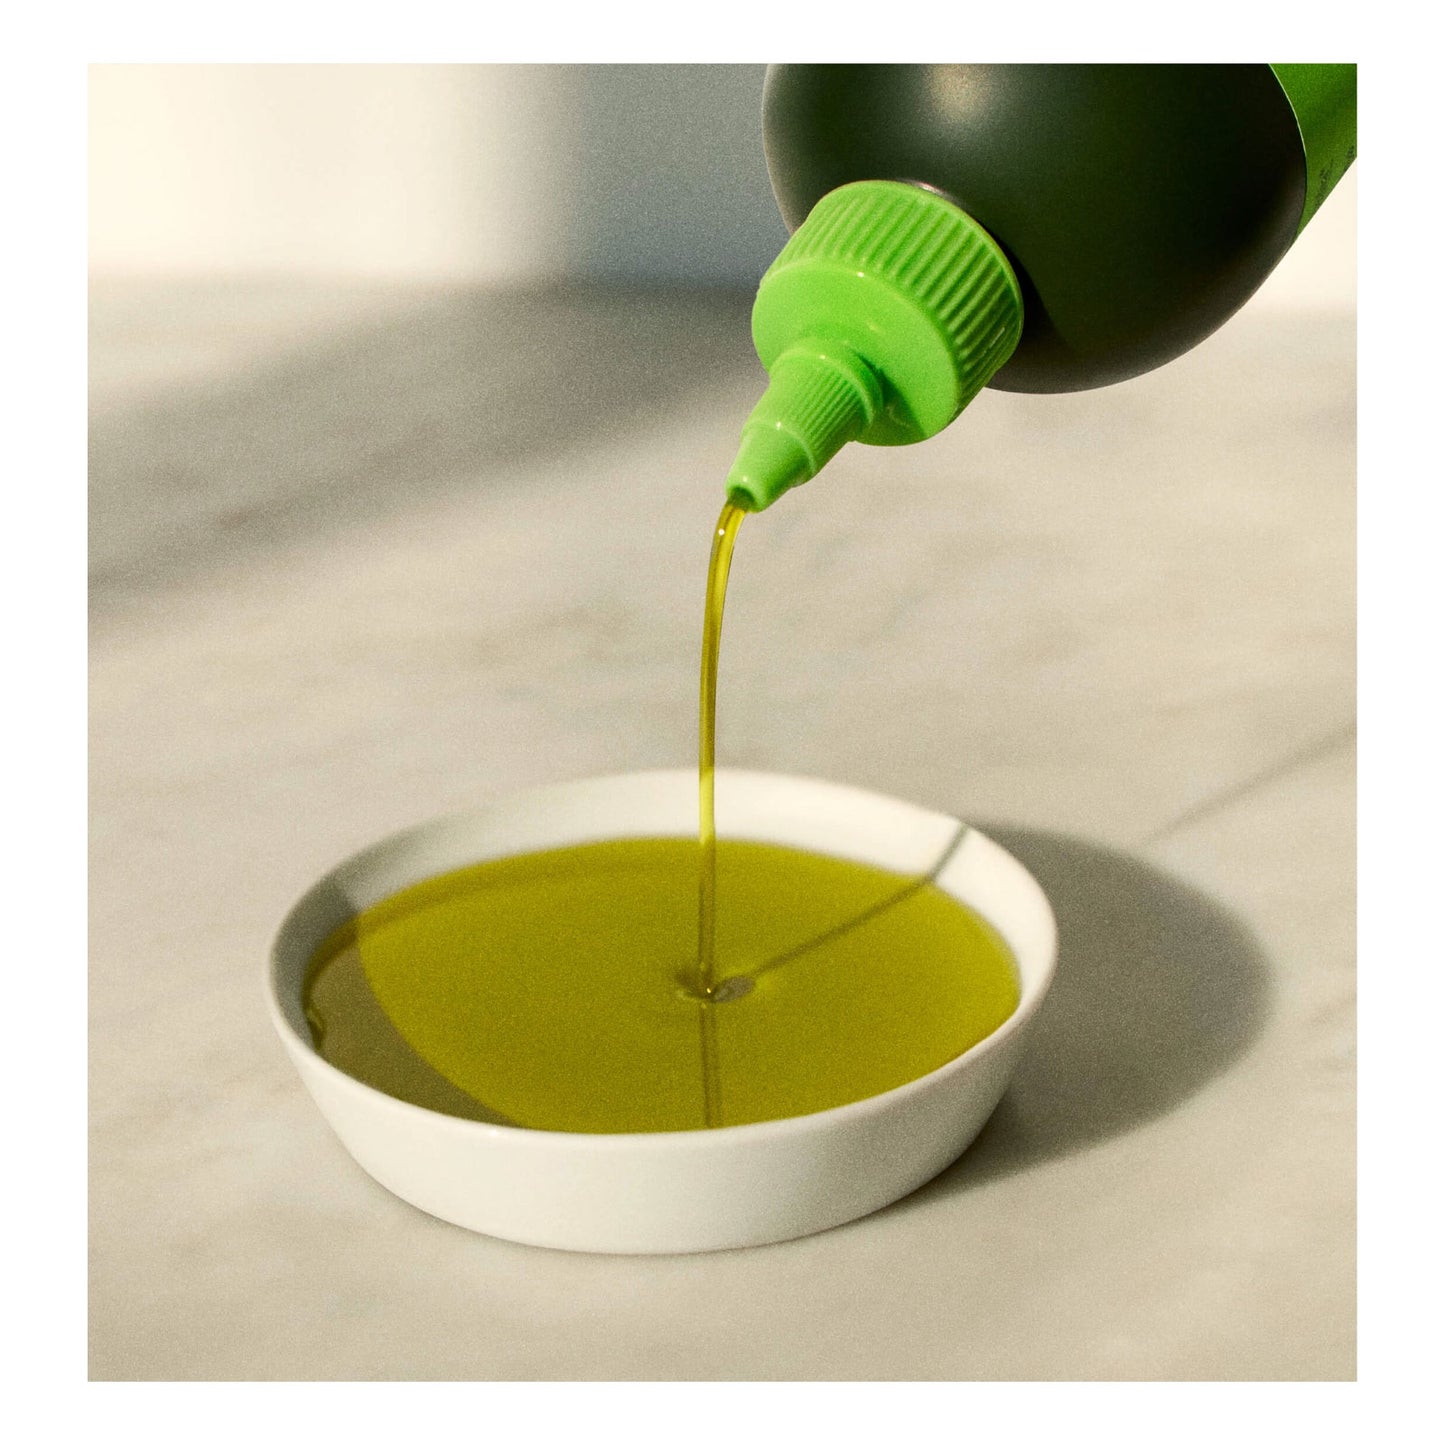 Graza "Drizzle" Olive Oil